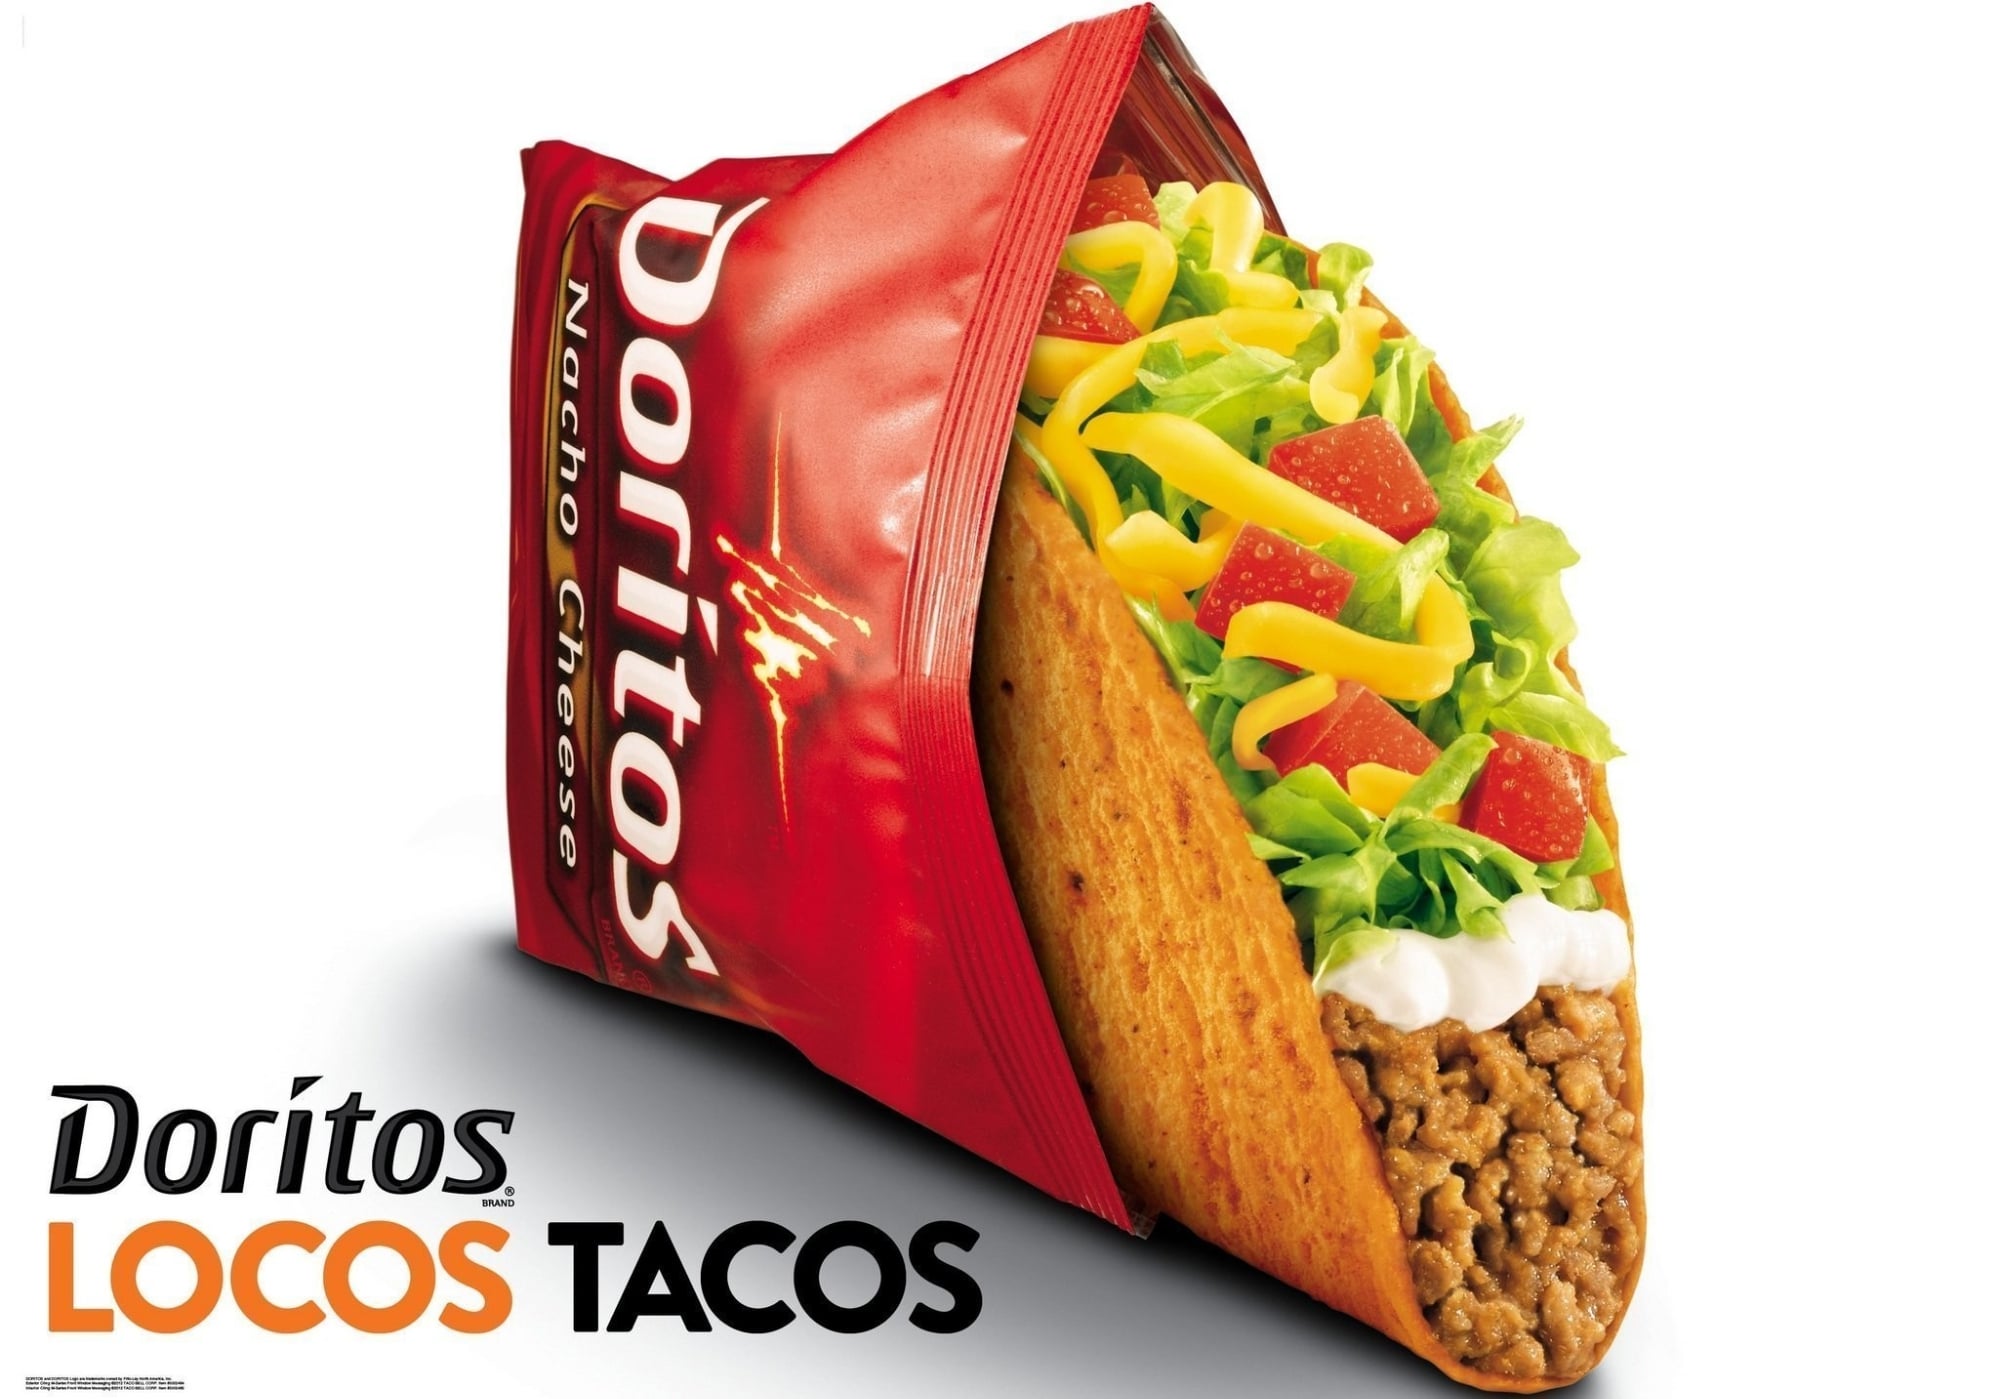 Taco Bell & Doritos’ Doritos Locos Tacos